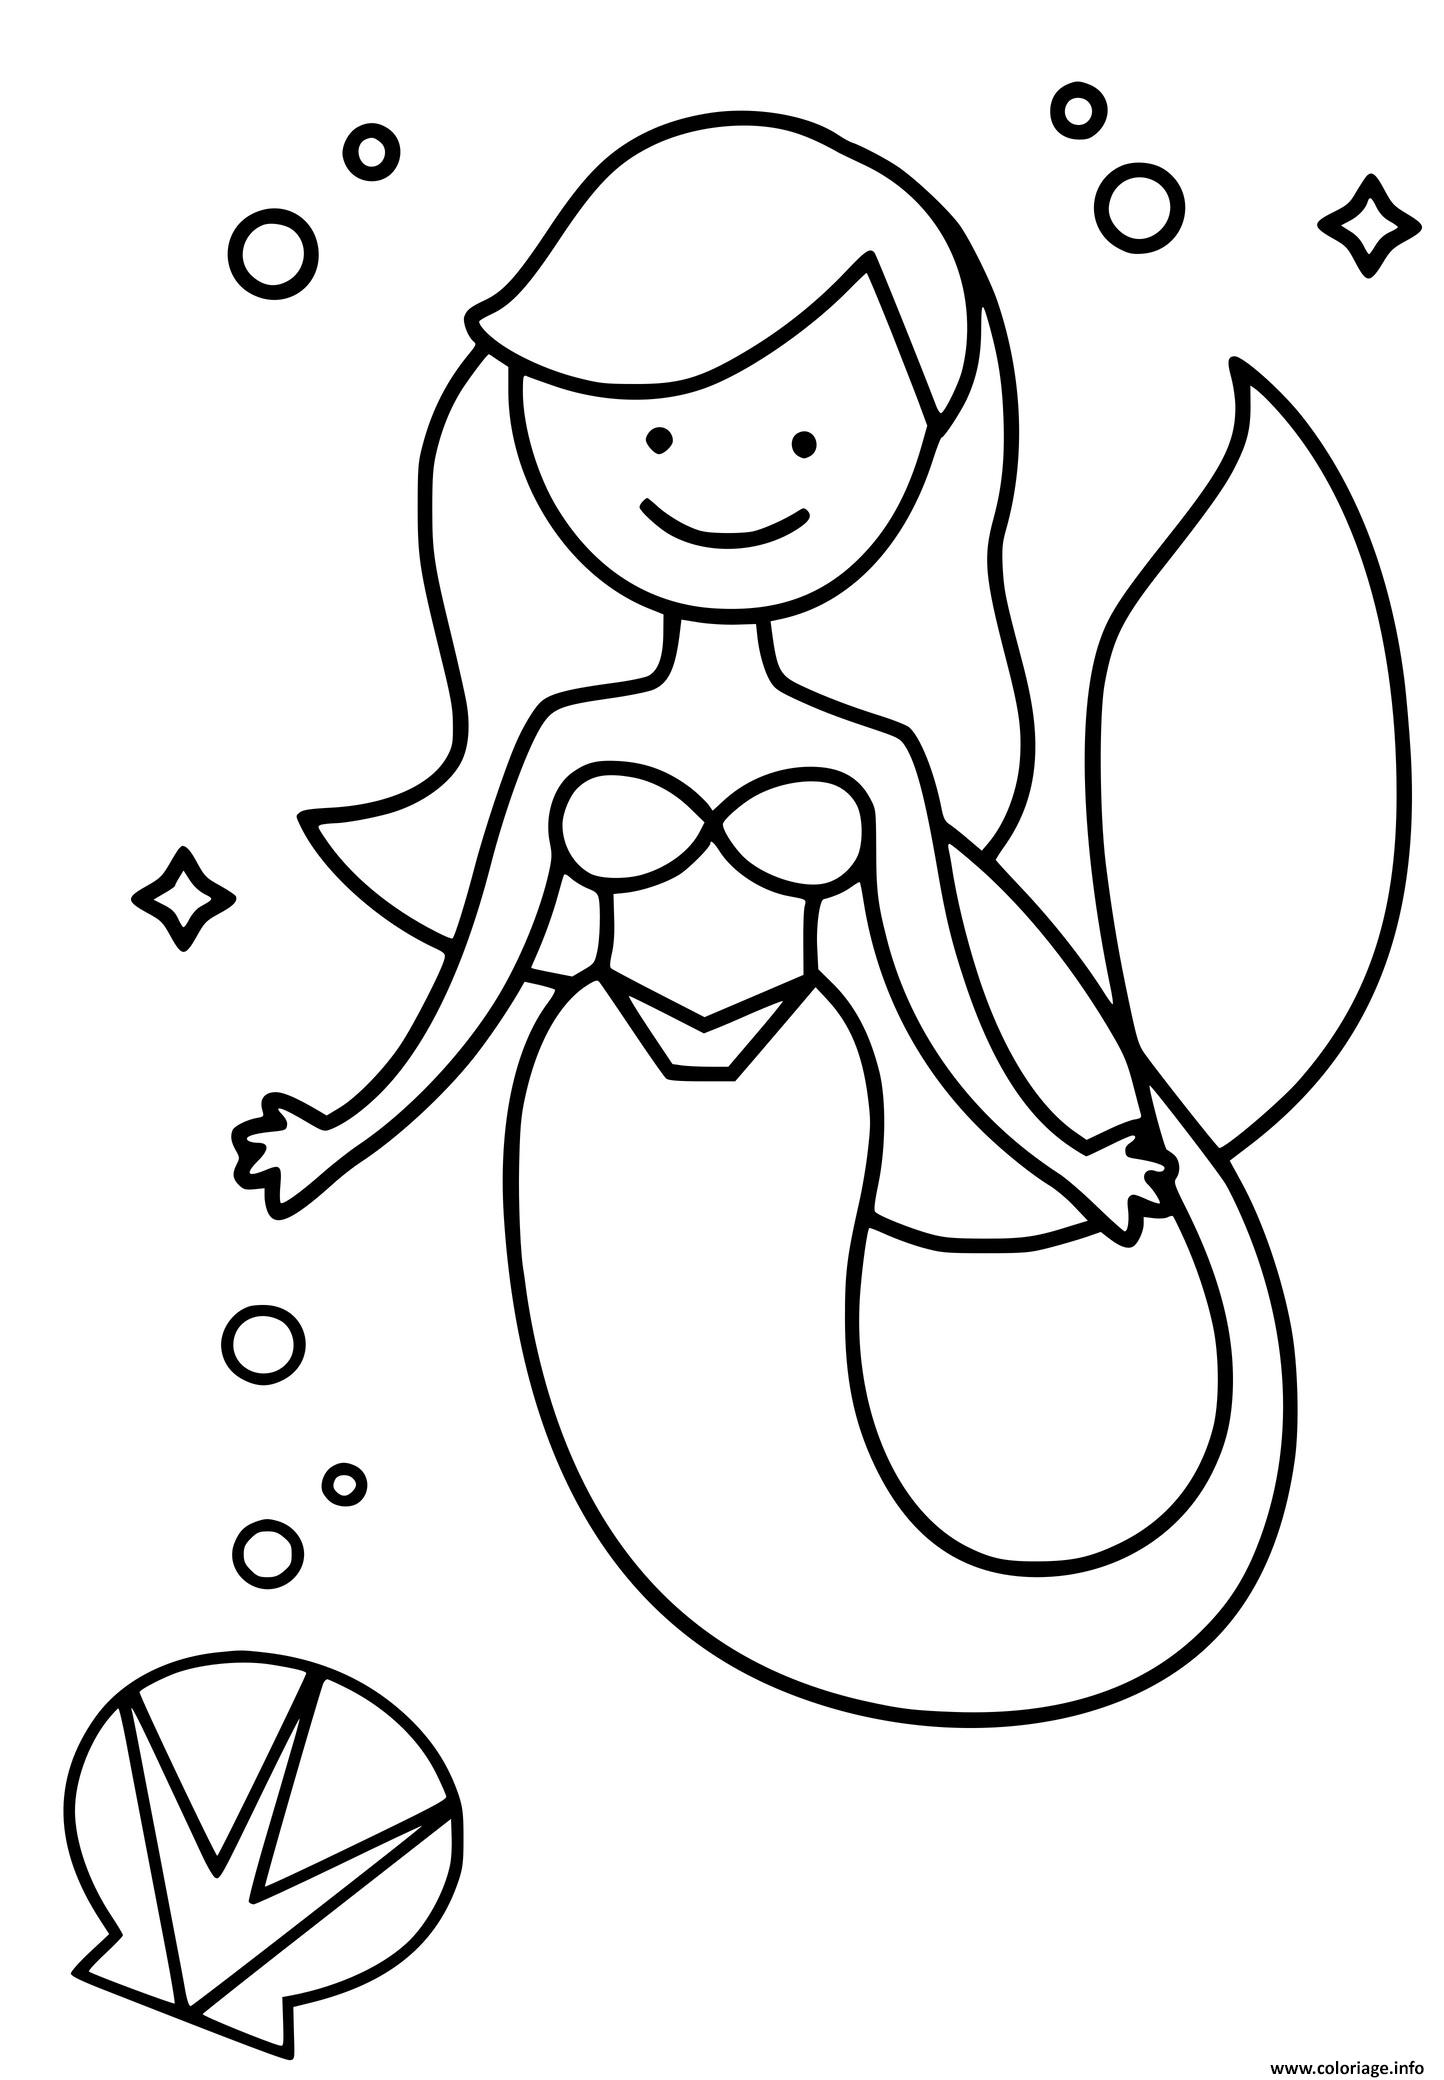 Coloriage La Princesse Sirene Comme Ariel De La Petite Sirene Jecolorie Com